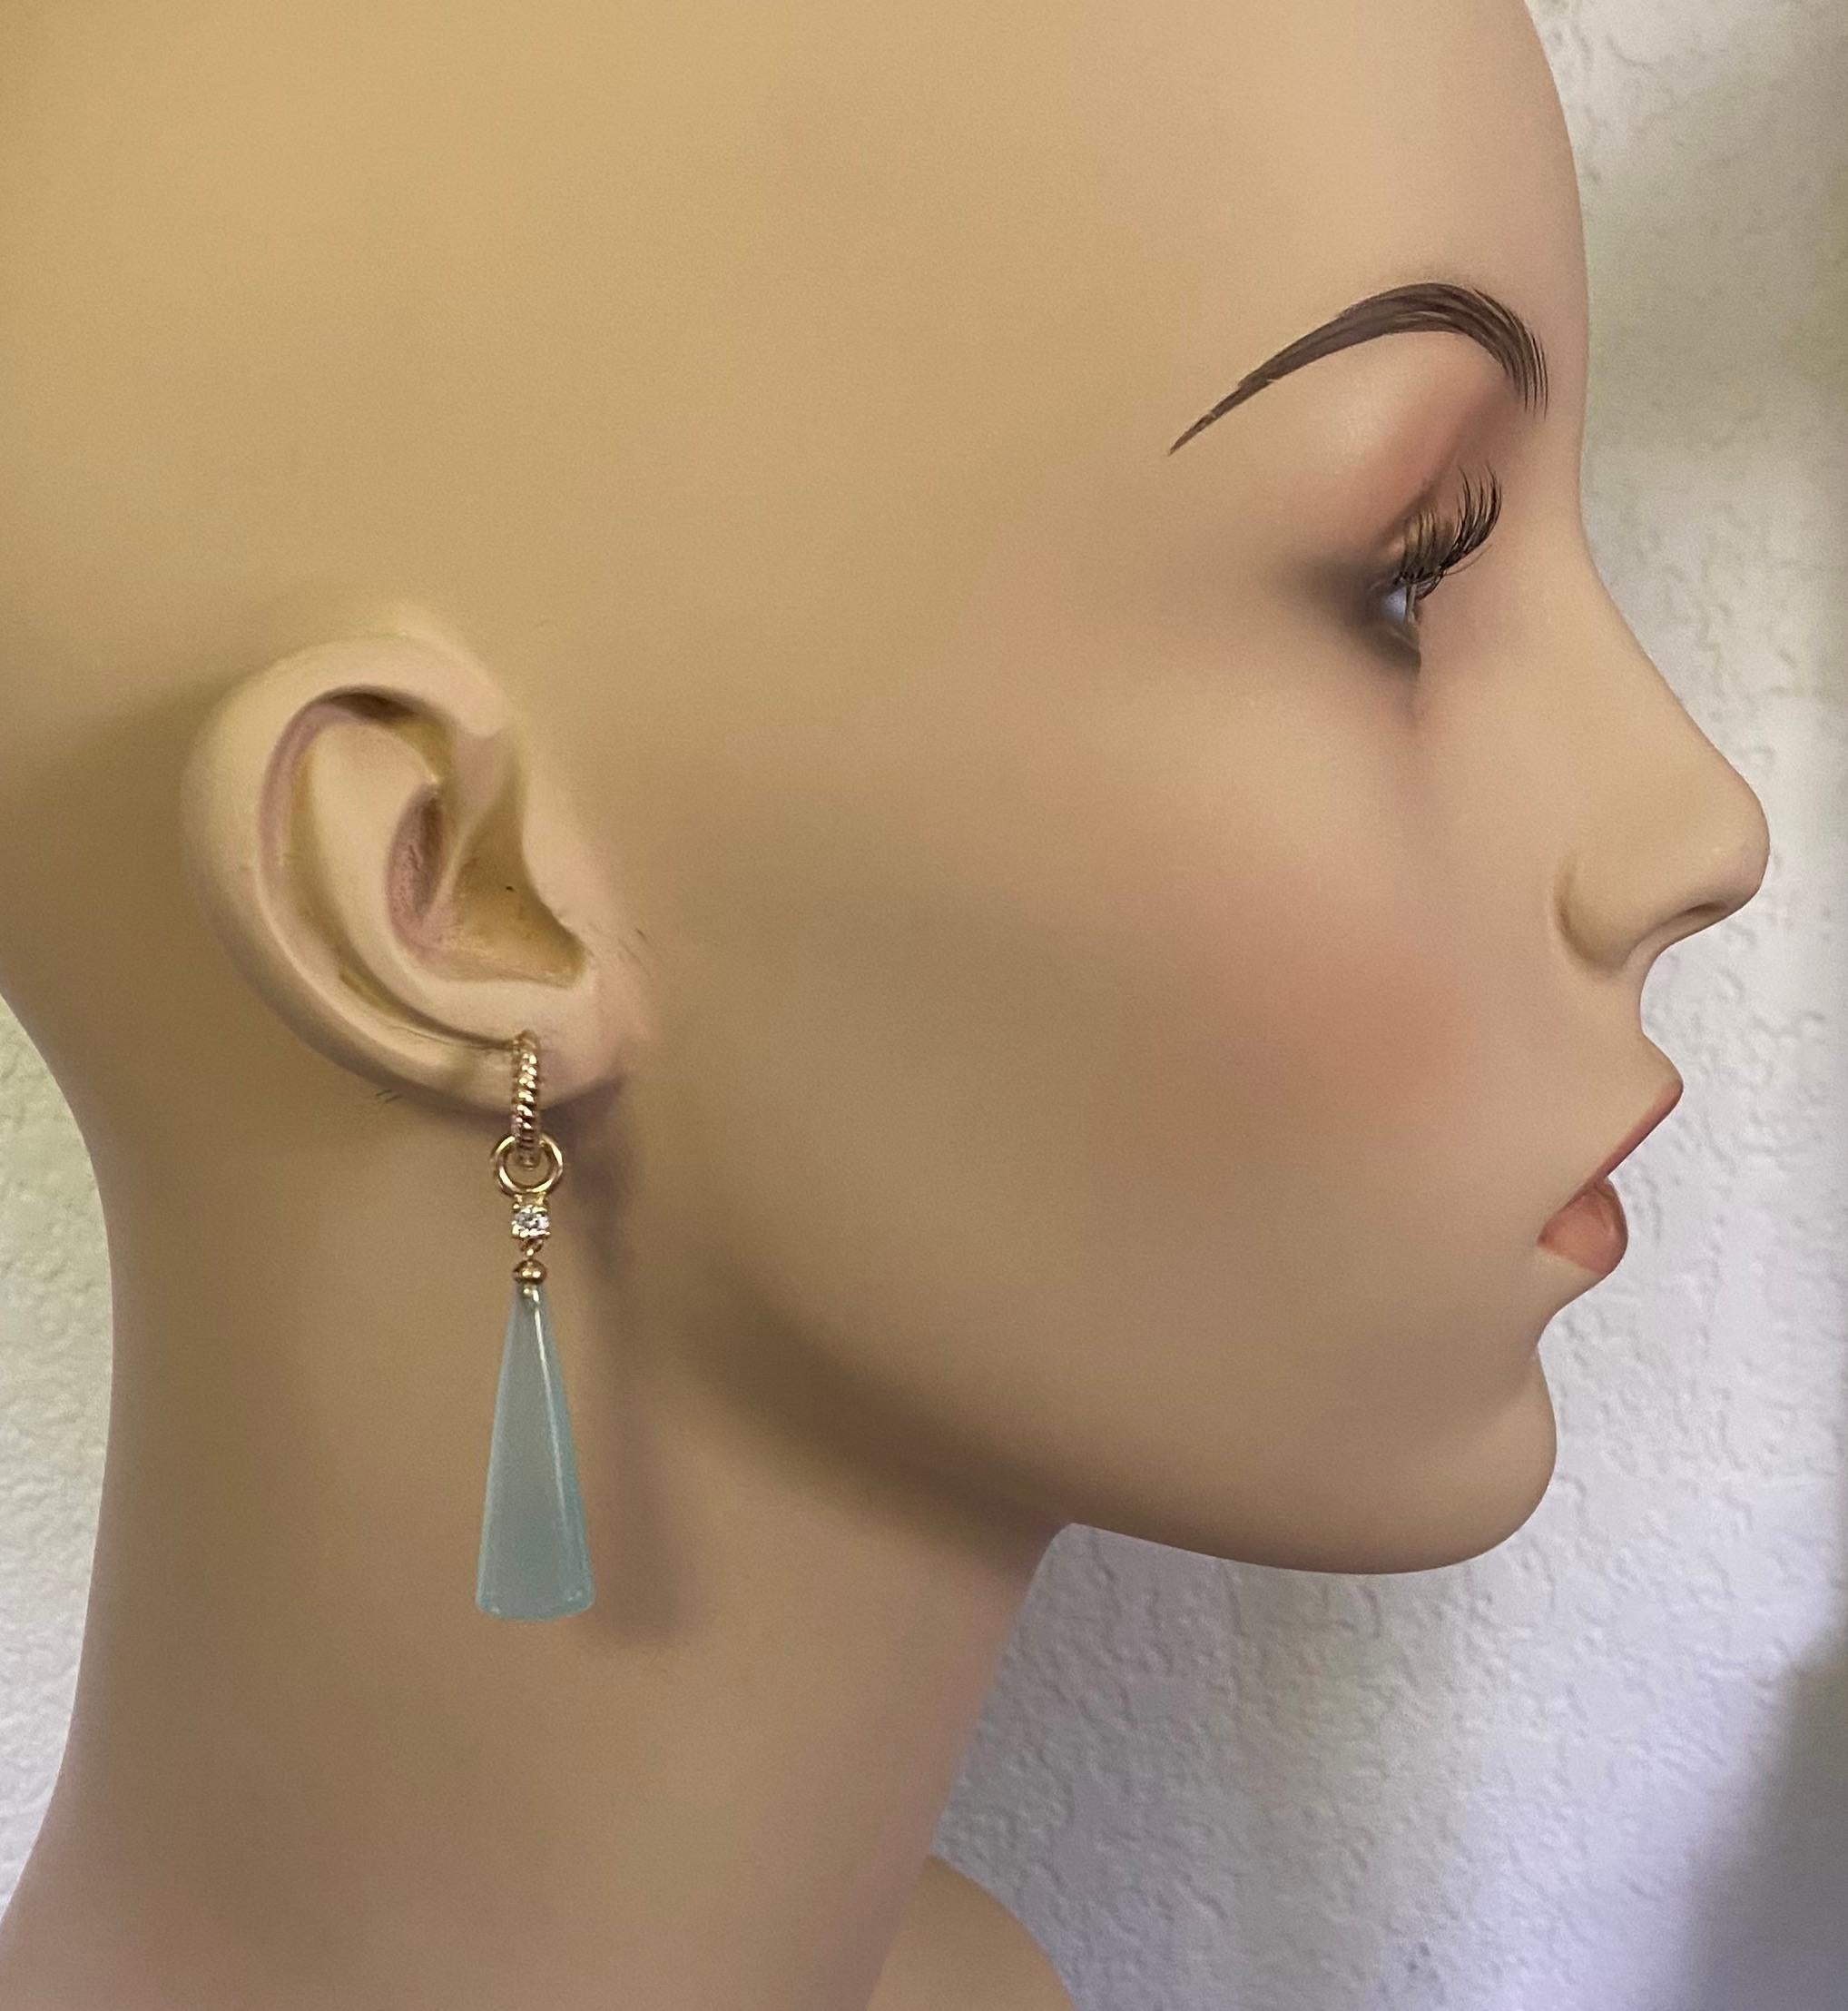 La calcédoine bleue est mise en valeur dans ces délicates boucles d'oreilles pendantes.  La calcédoine (origine : Brésil) a été taillée et polie de manière experte en briolette lisse avec des extrémités émoussées à la finition inhabituelle.  Les